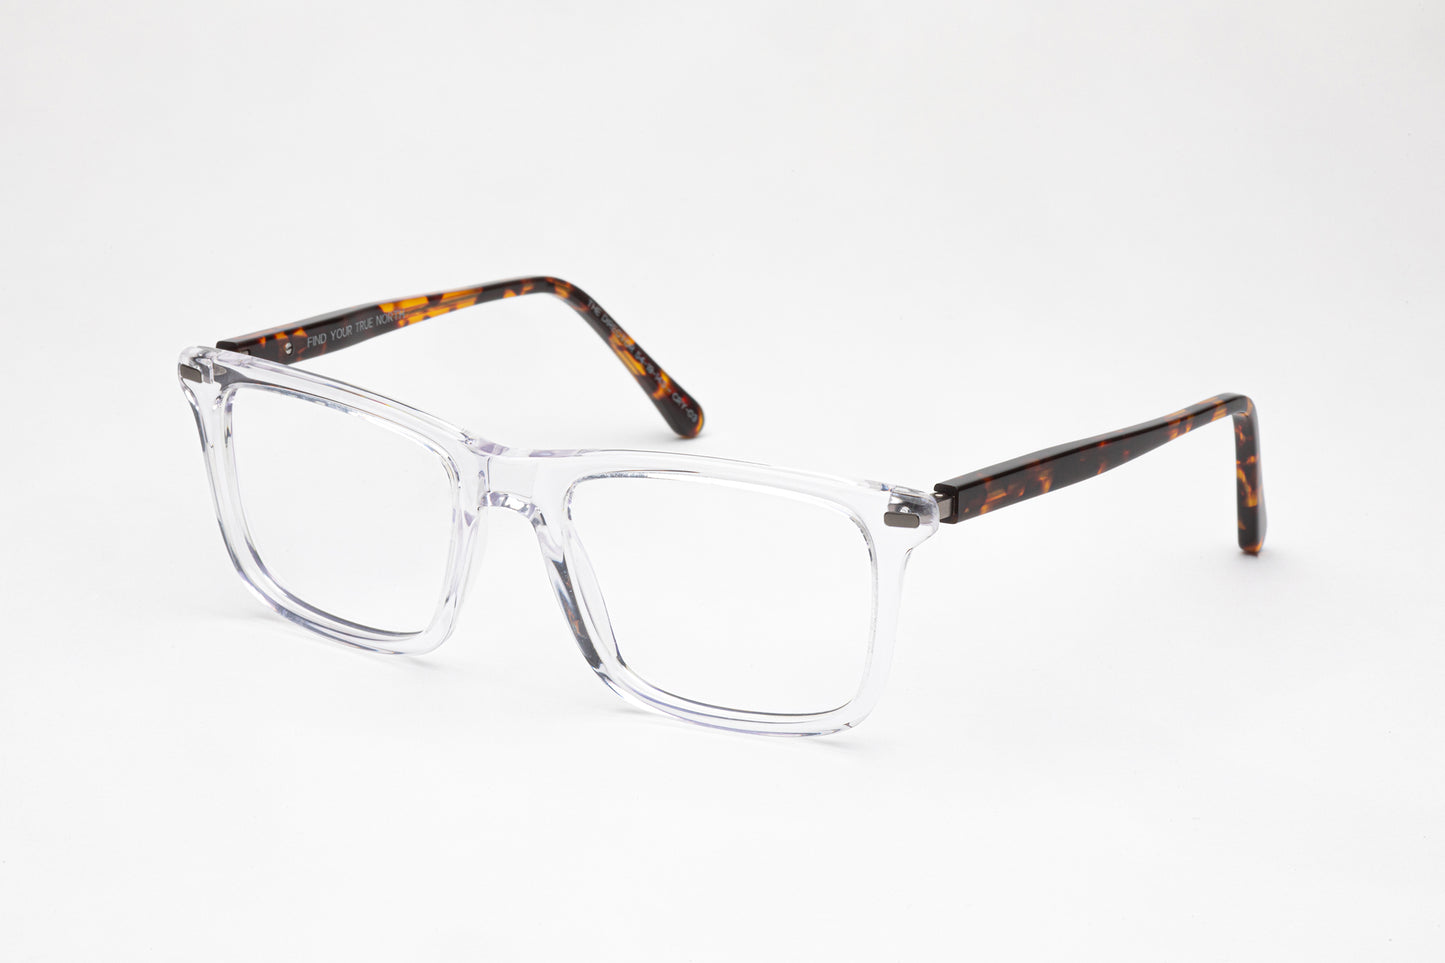 Angled View - The Director | Clear Frame Glasses - Designer Prescription Glasses with Oversized Rectangular Frames – Tortoiseshell Stems